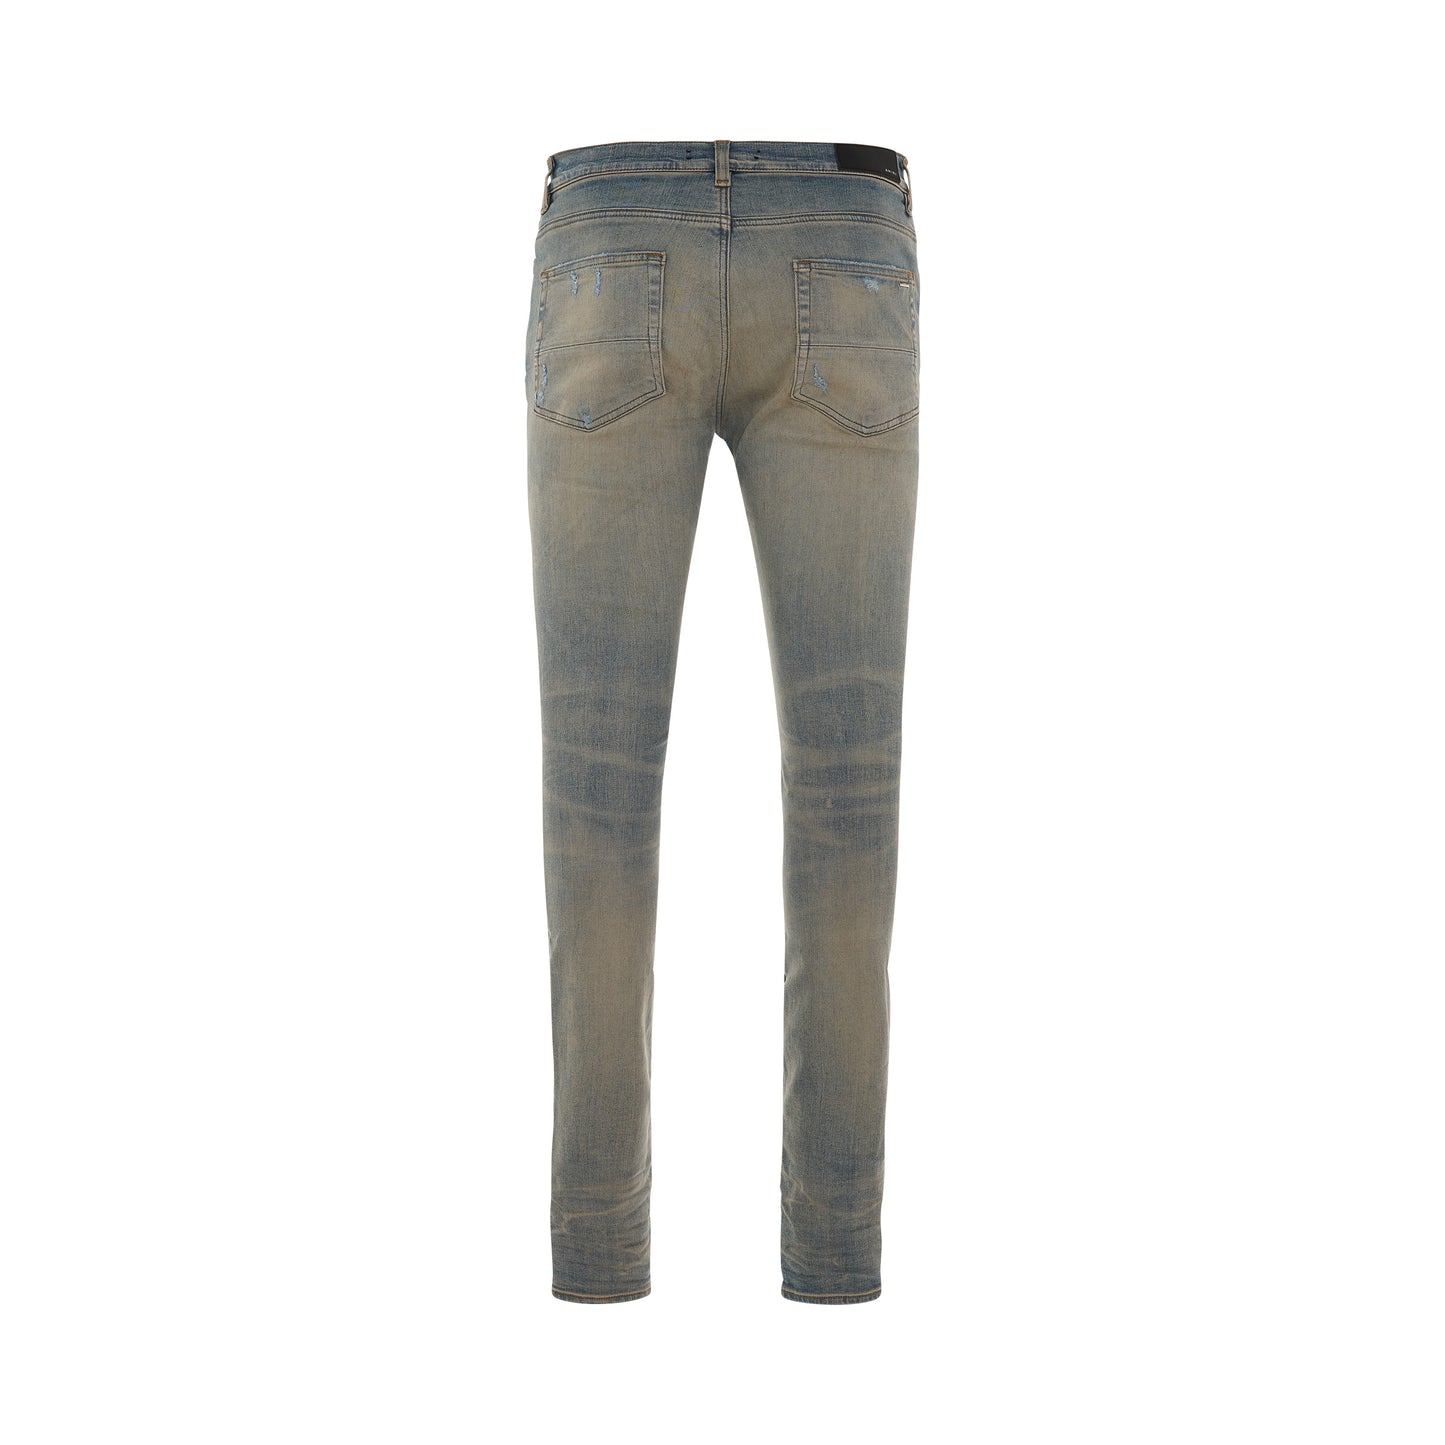 MX 1 Bandana Jeans in Clay Indigo